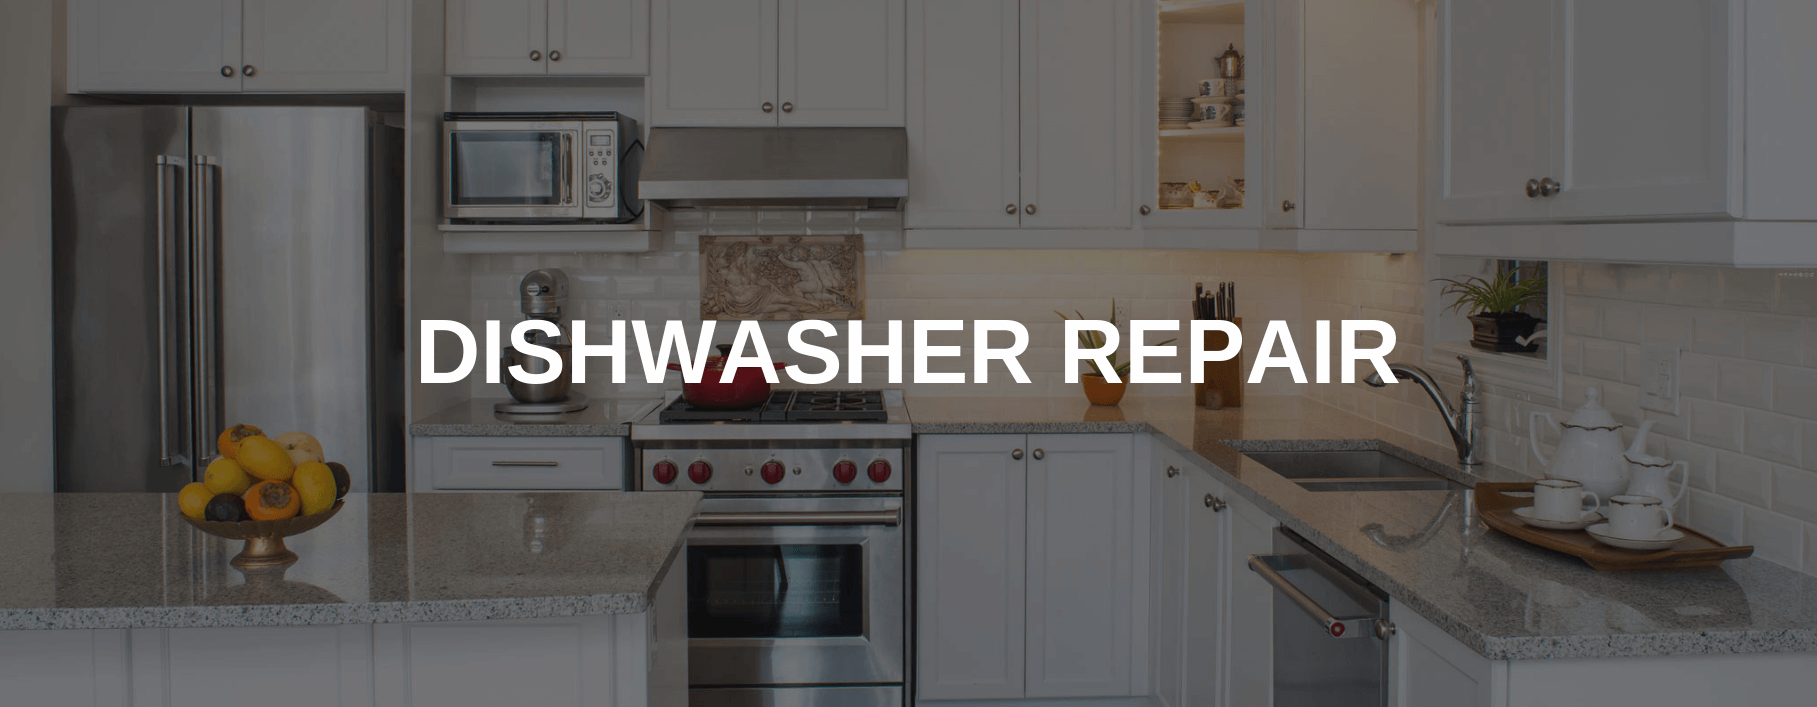 dishwasher repair Agawam